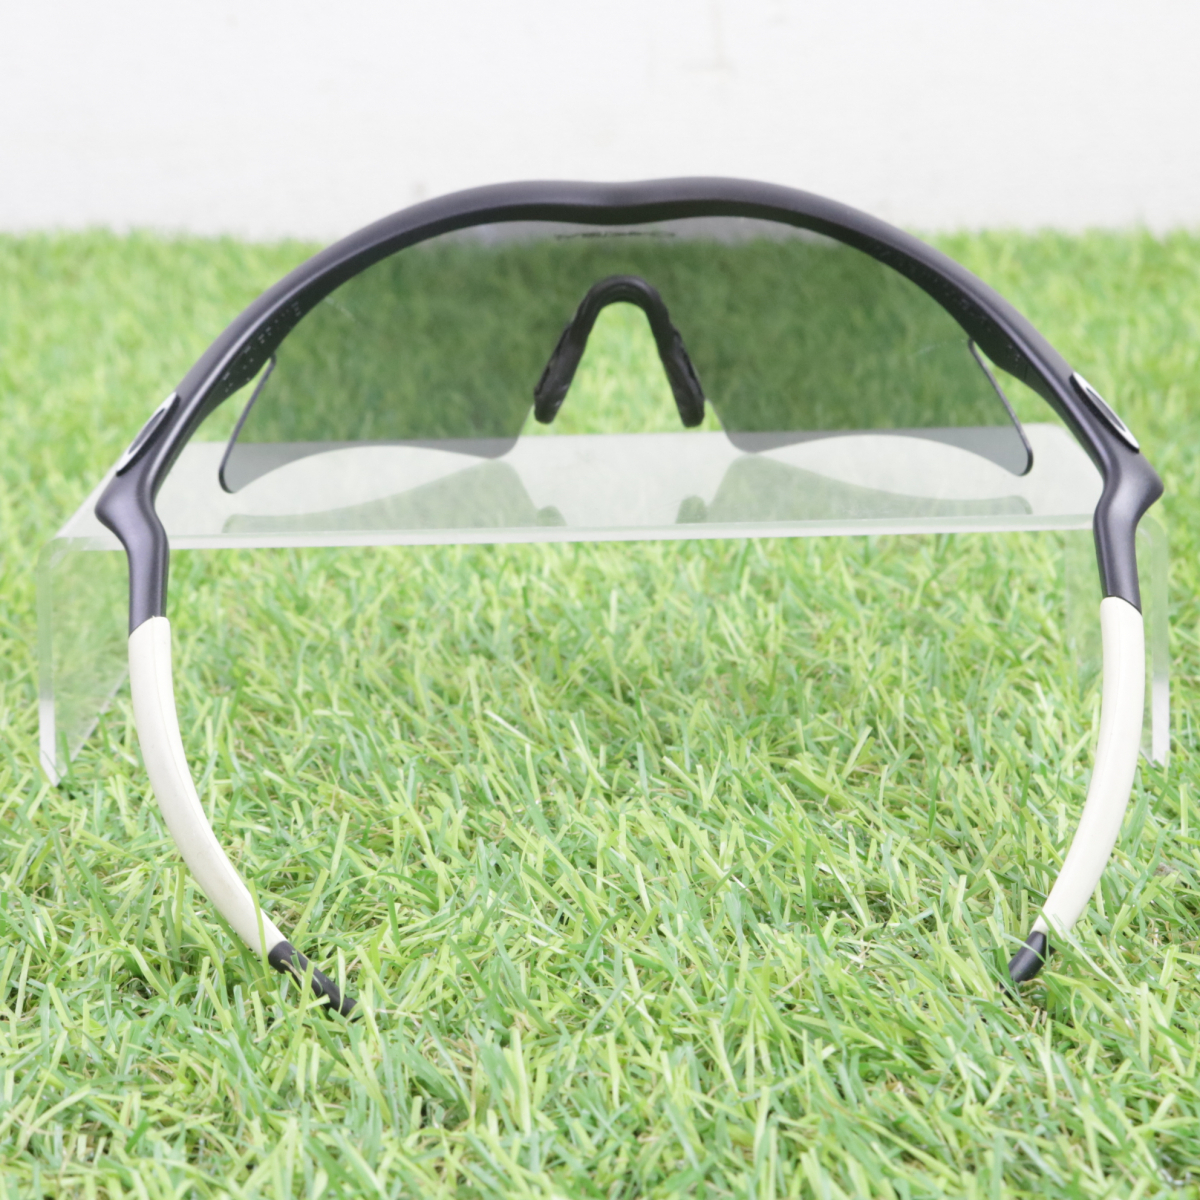 [ пакет имеется ]OAKLEY M FRAME спортивные солнцезащитные очки Oacley белый × черный цвет движение хобби тренировка начинающий mochi беж .n005FCEFR27